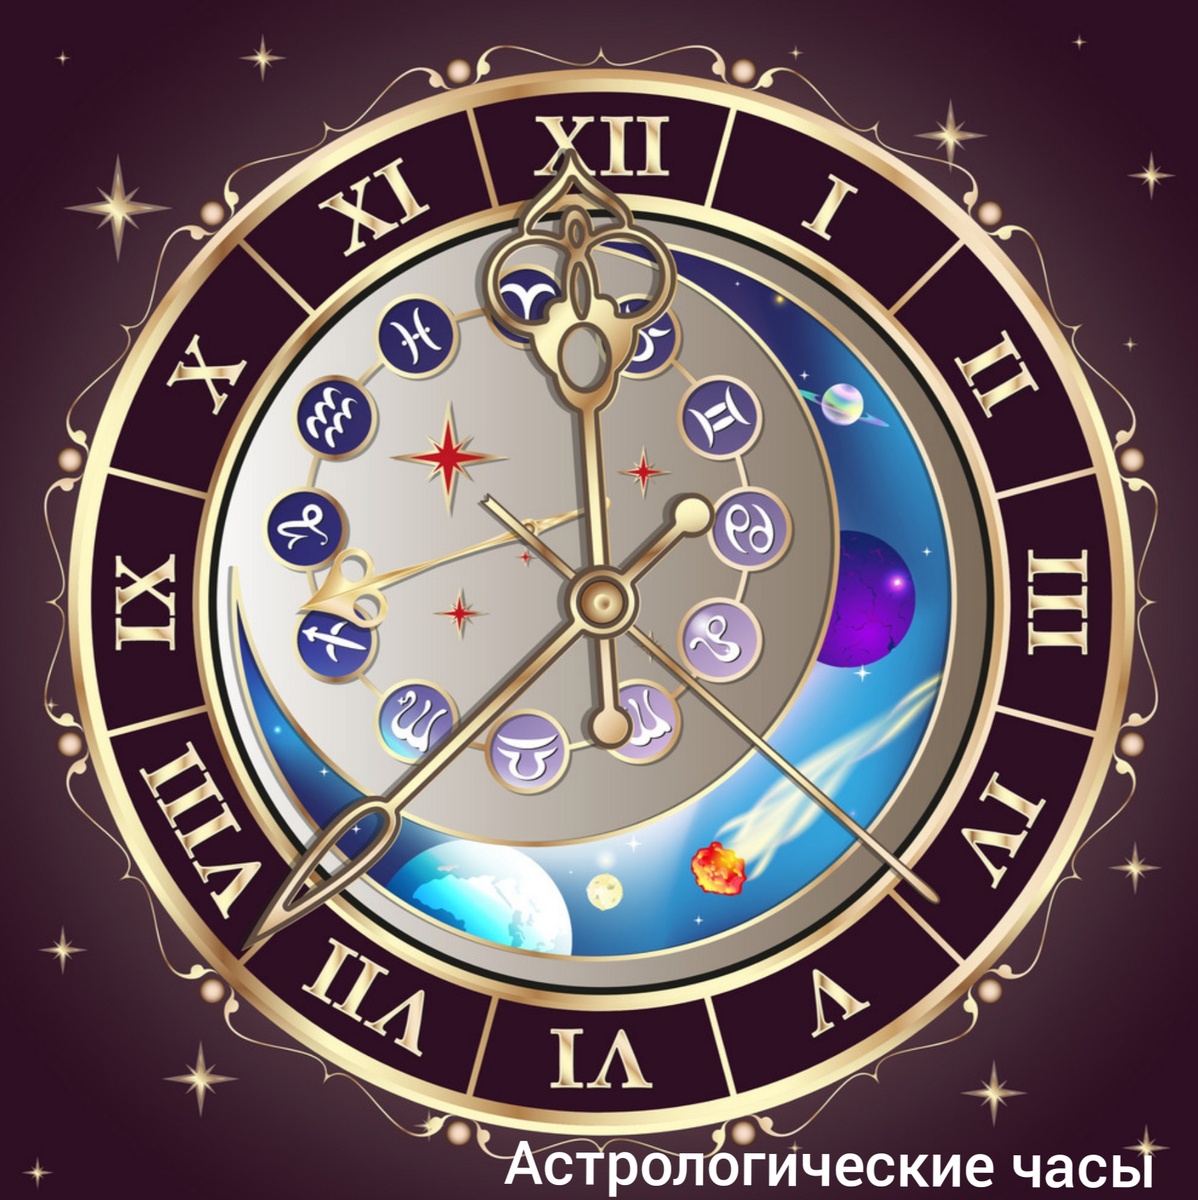 А знаете ли Вы, что астрологическое время отличается от обычного?!  ❗В отличии от обычных часов, астрологические часы могут иметь р азную длину.